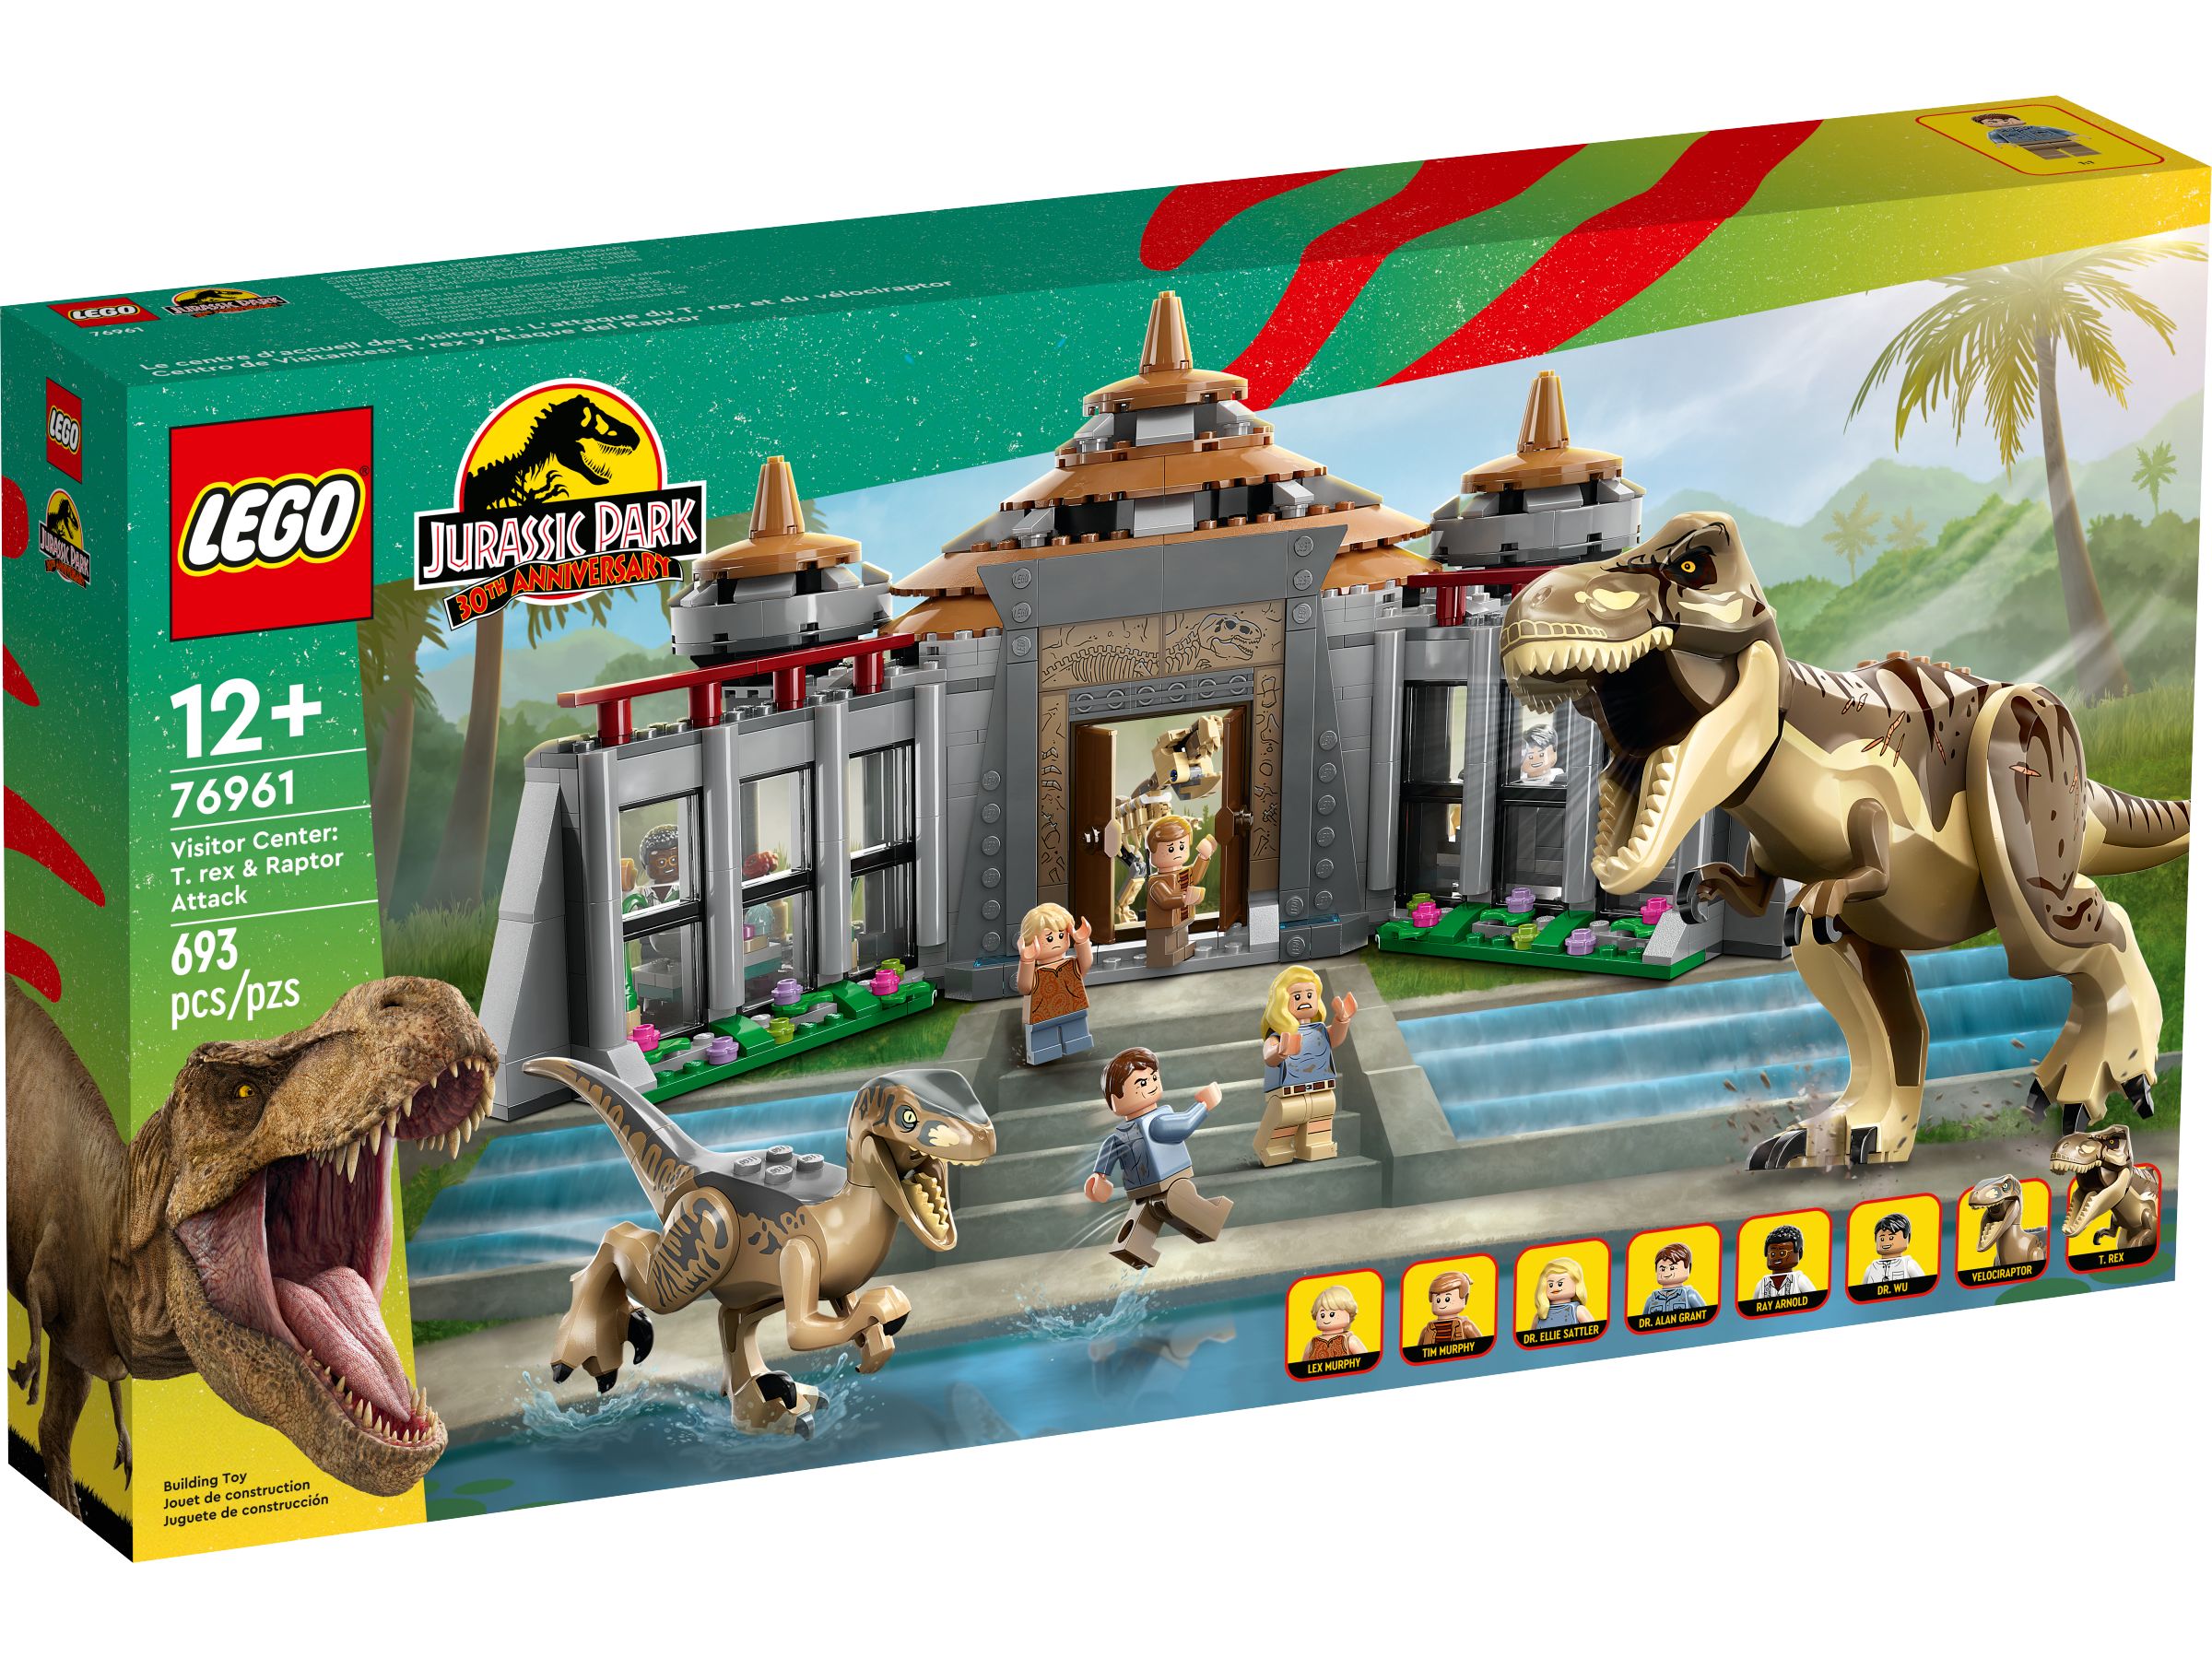 LEGO Jurassic World 76961 Angriff des T. rex und des Raptors aufs Besucherzentrum LEGO_76961_alt1.jpg